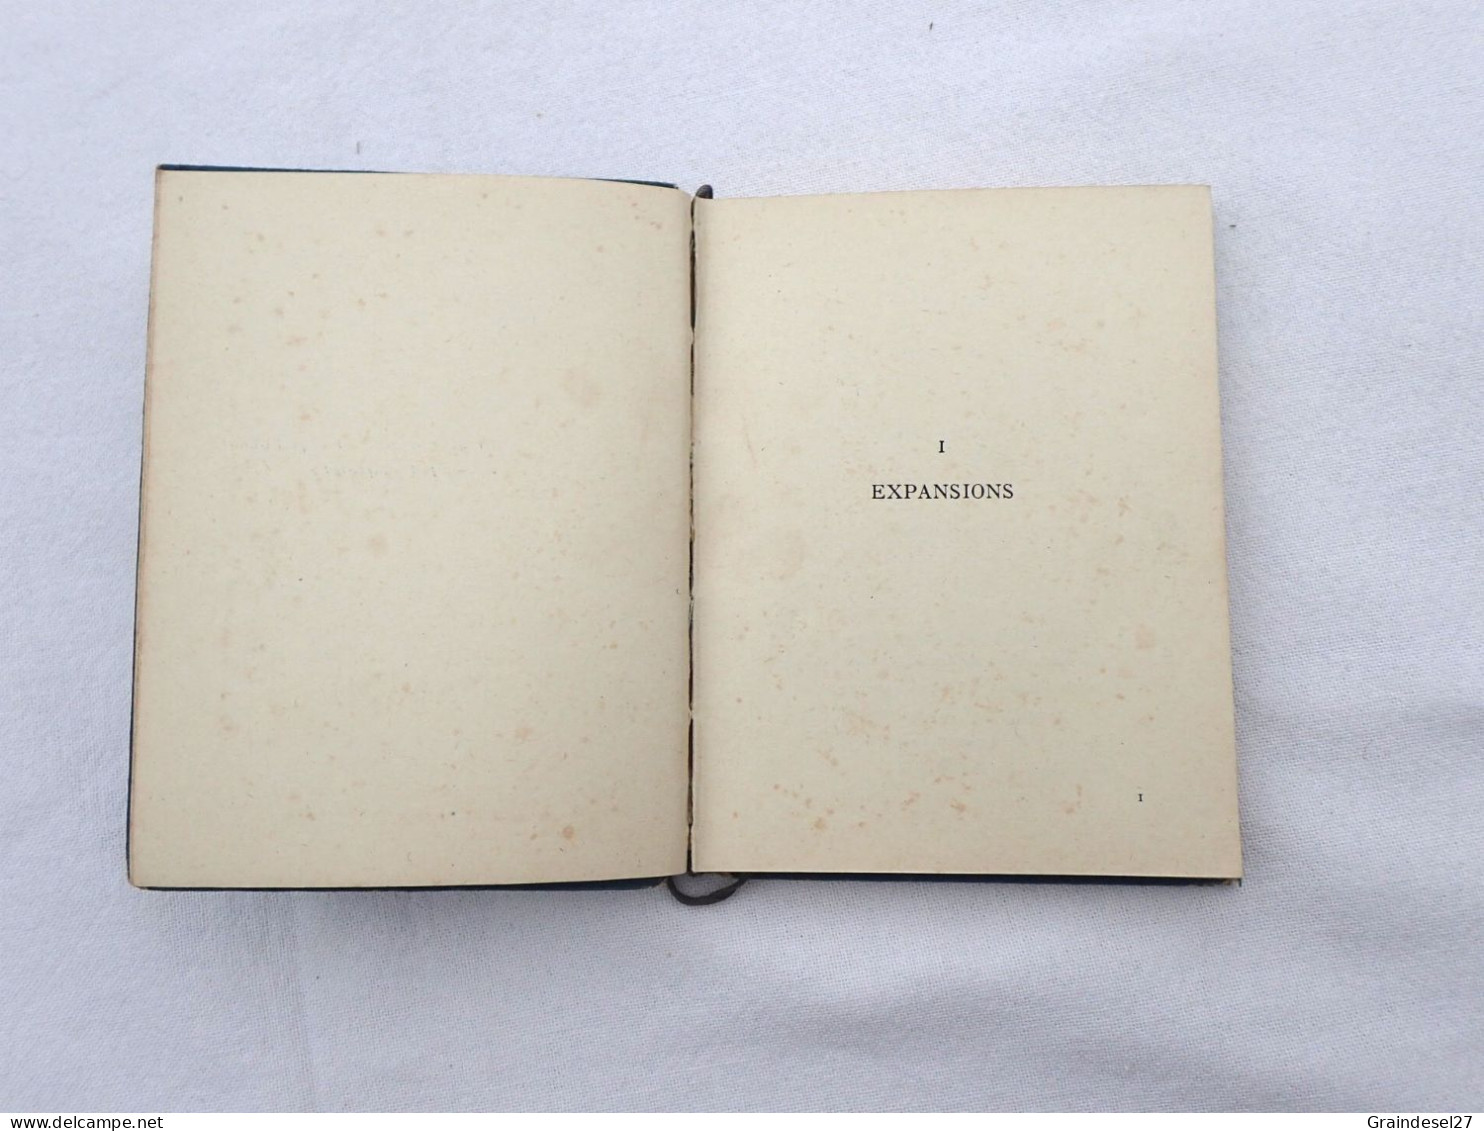 Livre "Toi et moi" de Paul Geraldy recueil de poésie, Editions Stock 1943